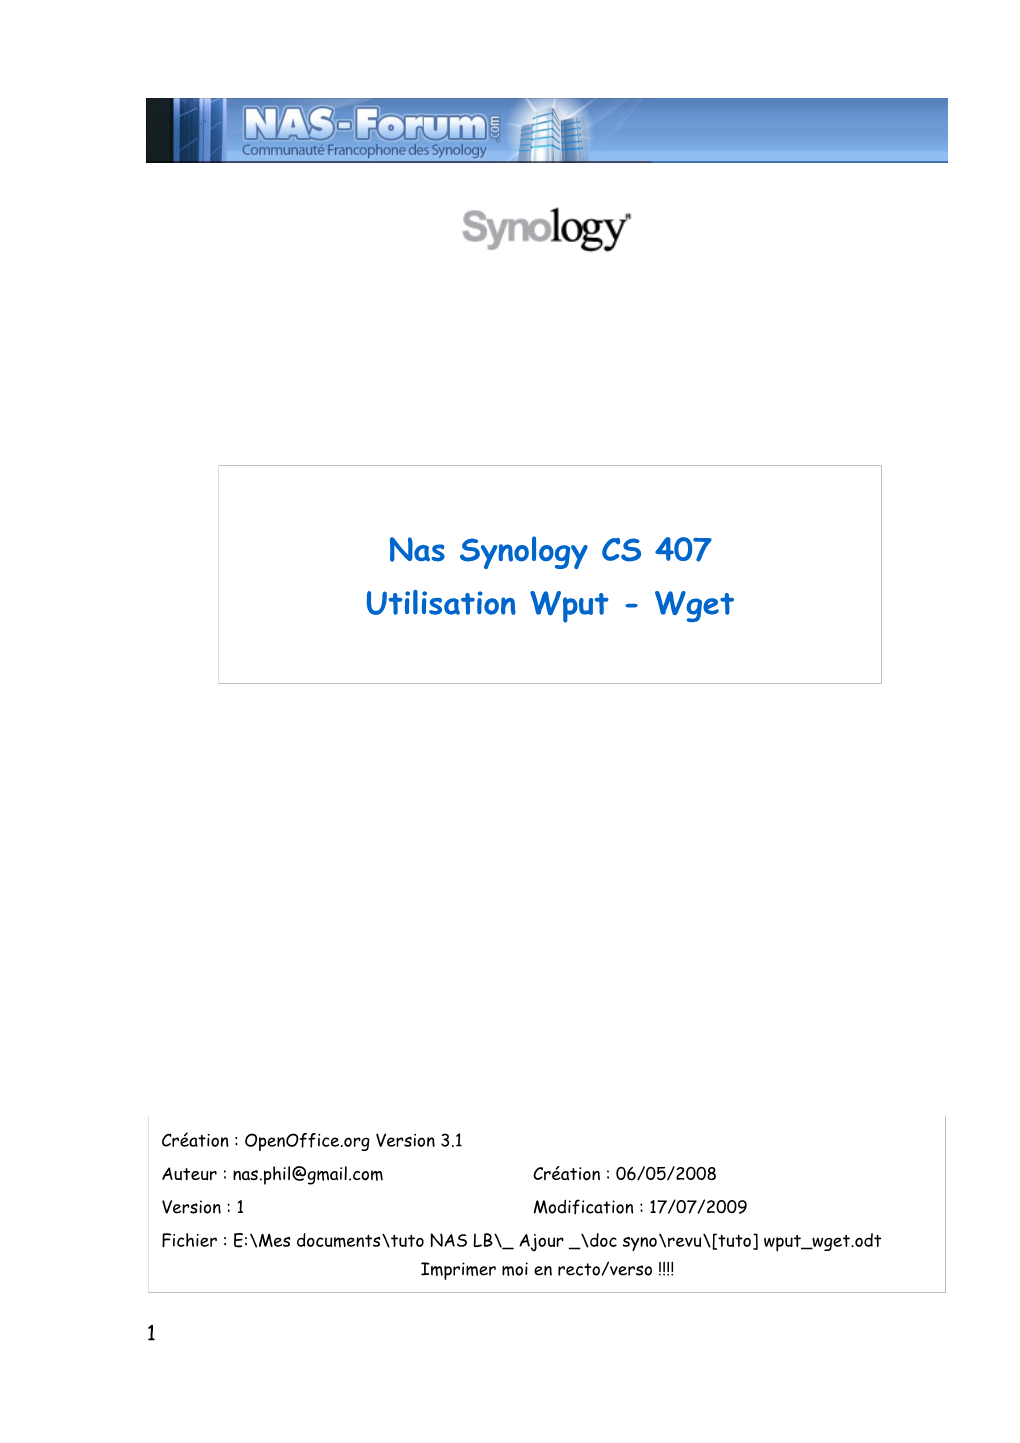 Nas Synology CS 407 Utilisation Wput - Wget